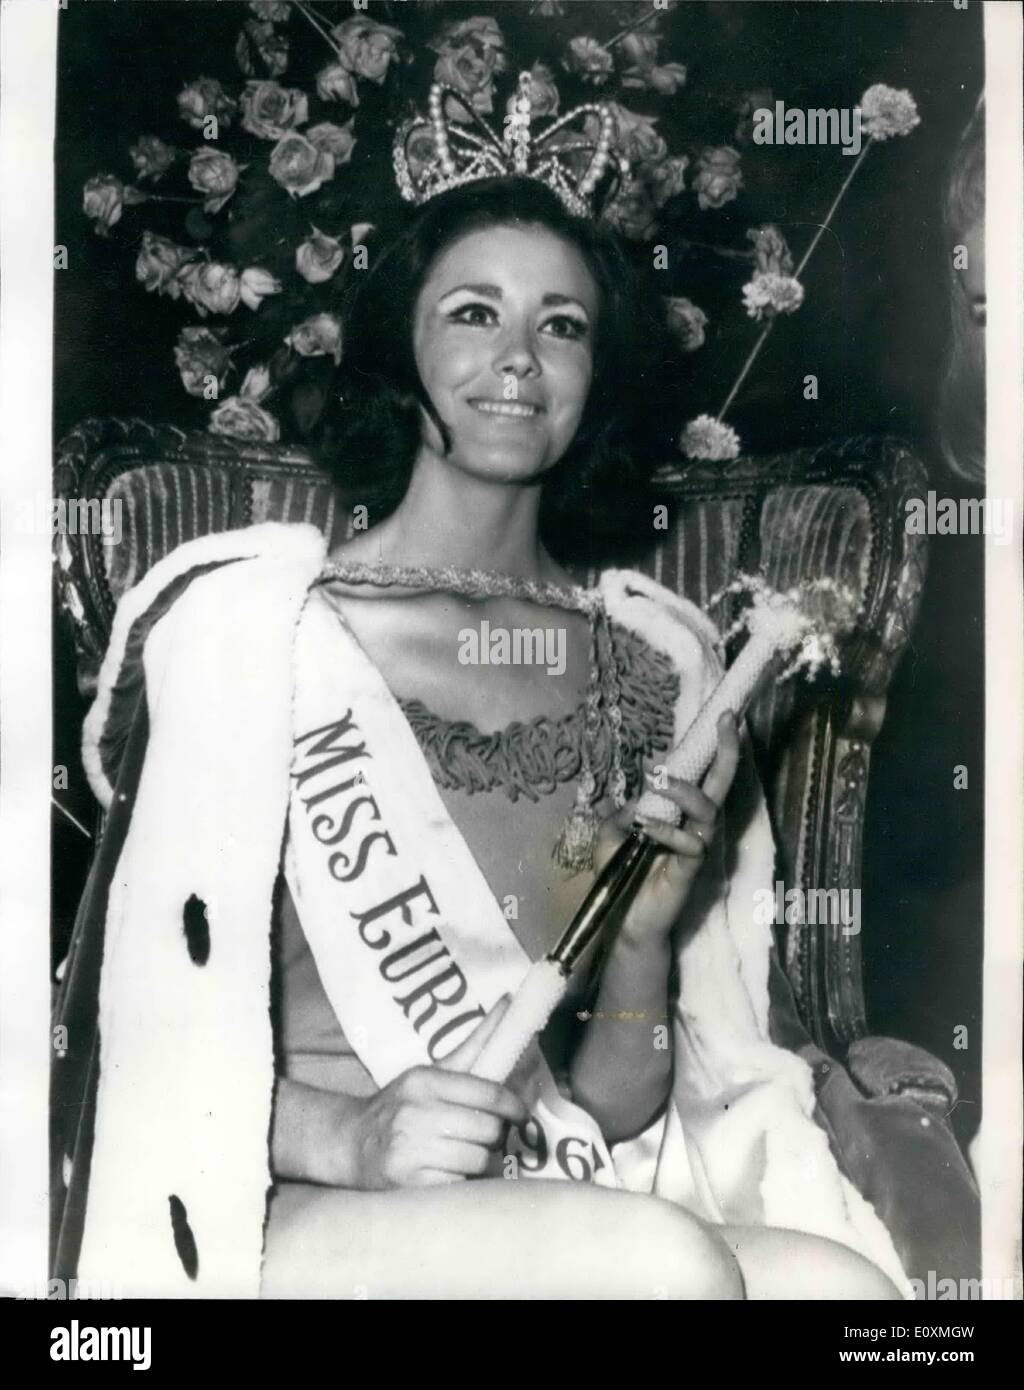 Jun. 04, 1967 - 4.6.67 Miss Spain wins the Ã¢â‚¬Å“Miss EuropeÃ¢â‚¬Â contest in Nice Ã¢â‚¬â€œ Paquita Torres Perez, Ã¢â‚¬Å“Miss Stock Photo